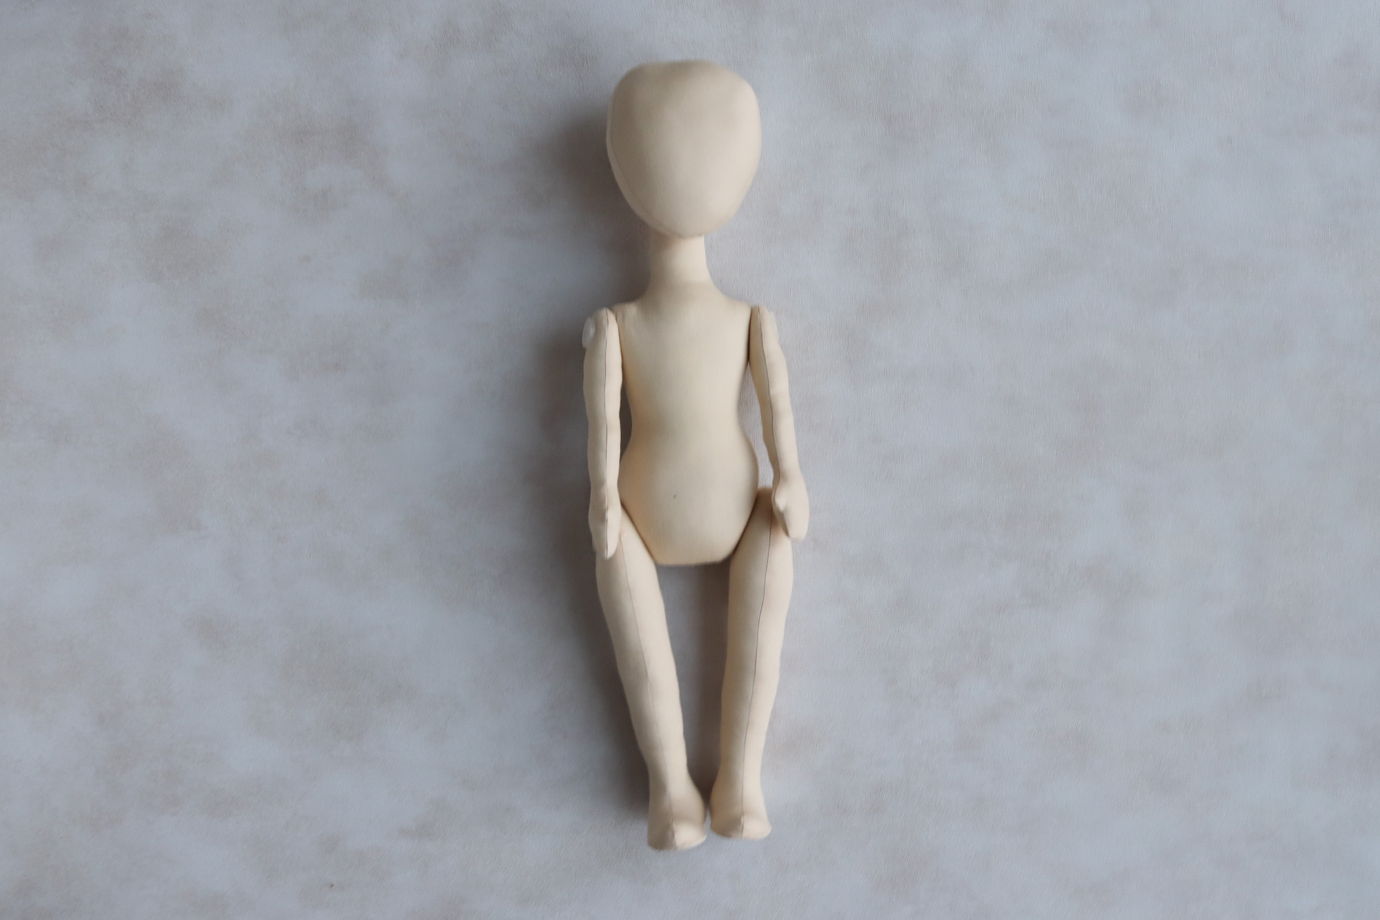 Злата, 42 см. Заготовка интерьерной куклы из текстиля для хобби, творчества, рукоделия